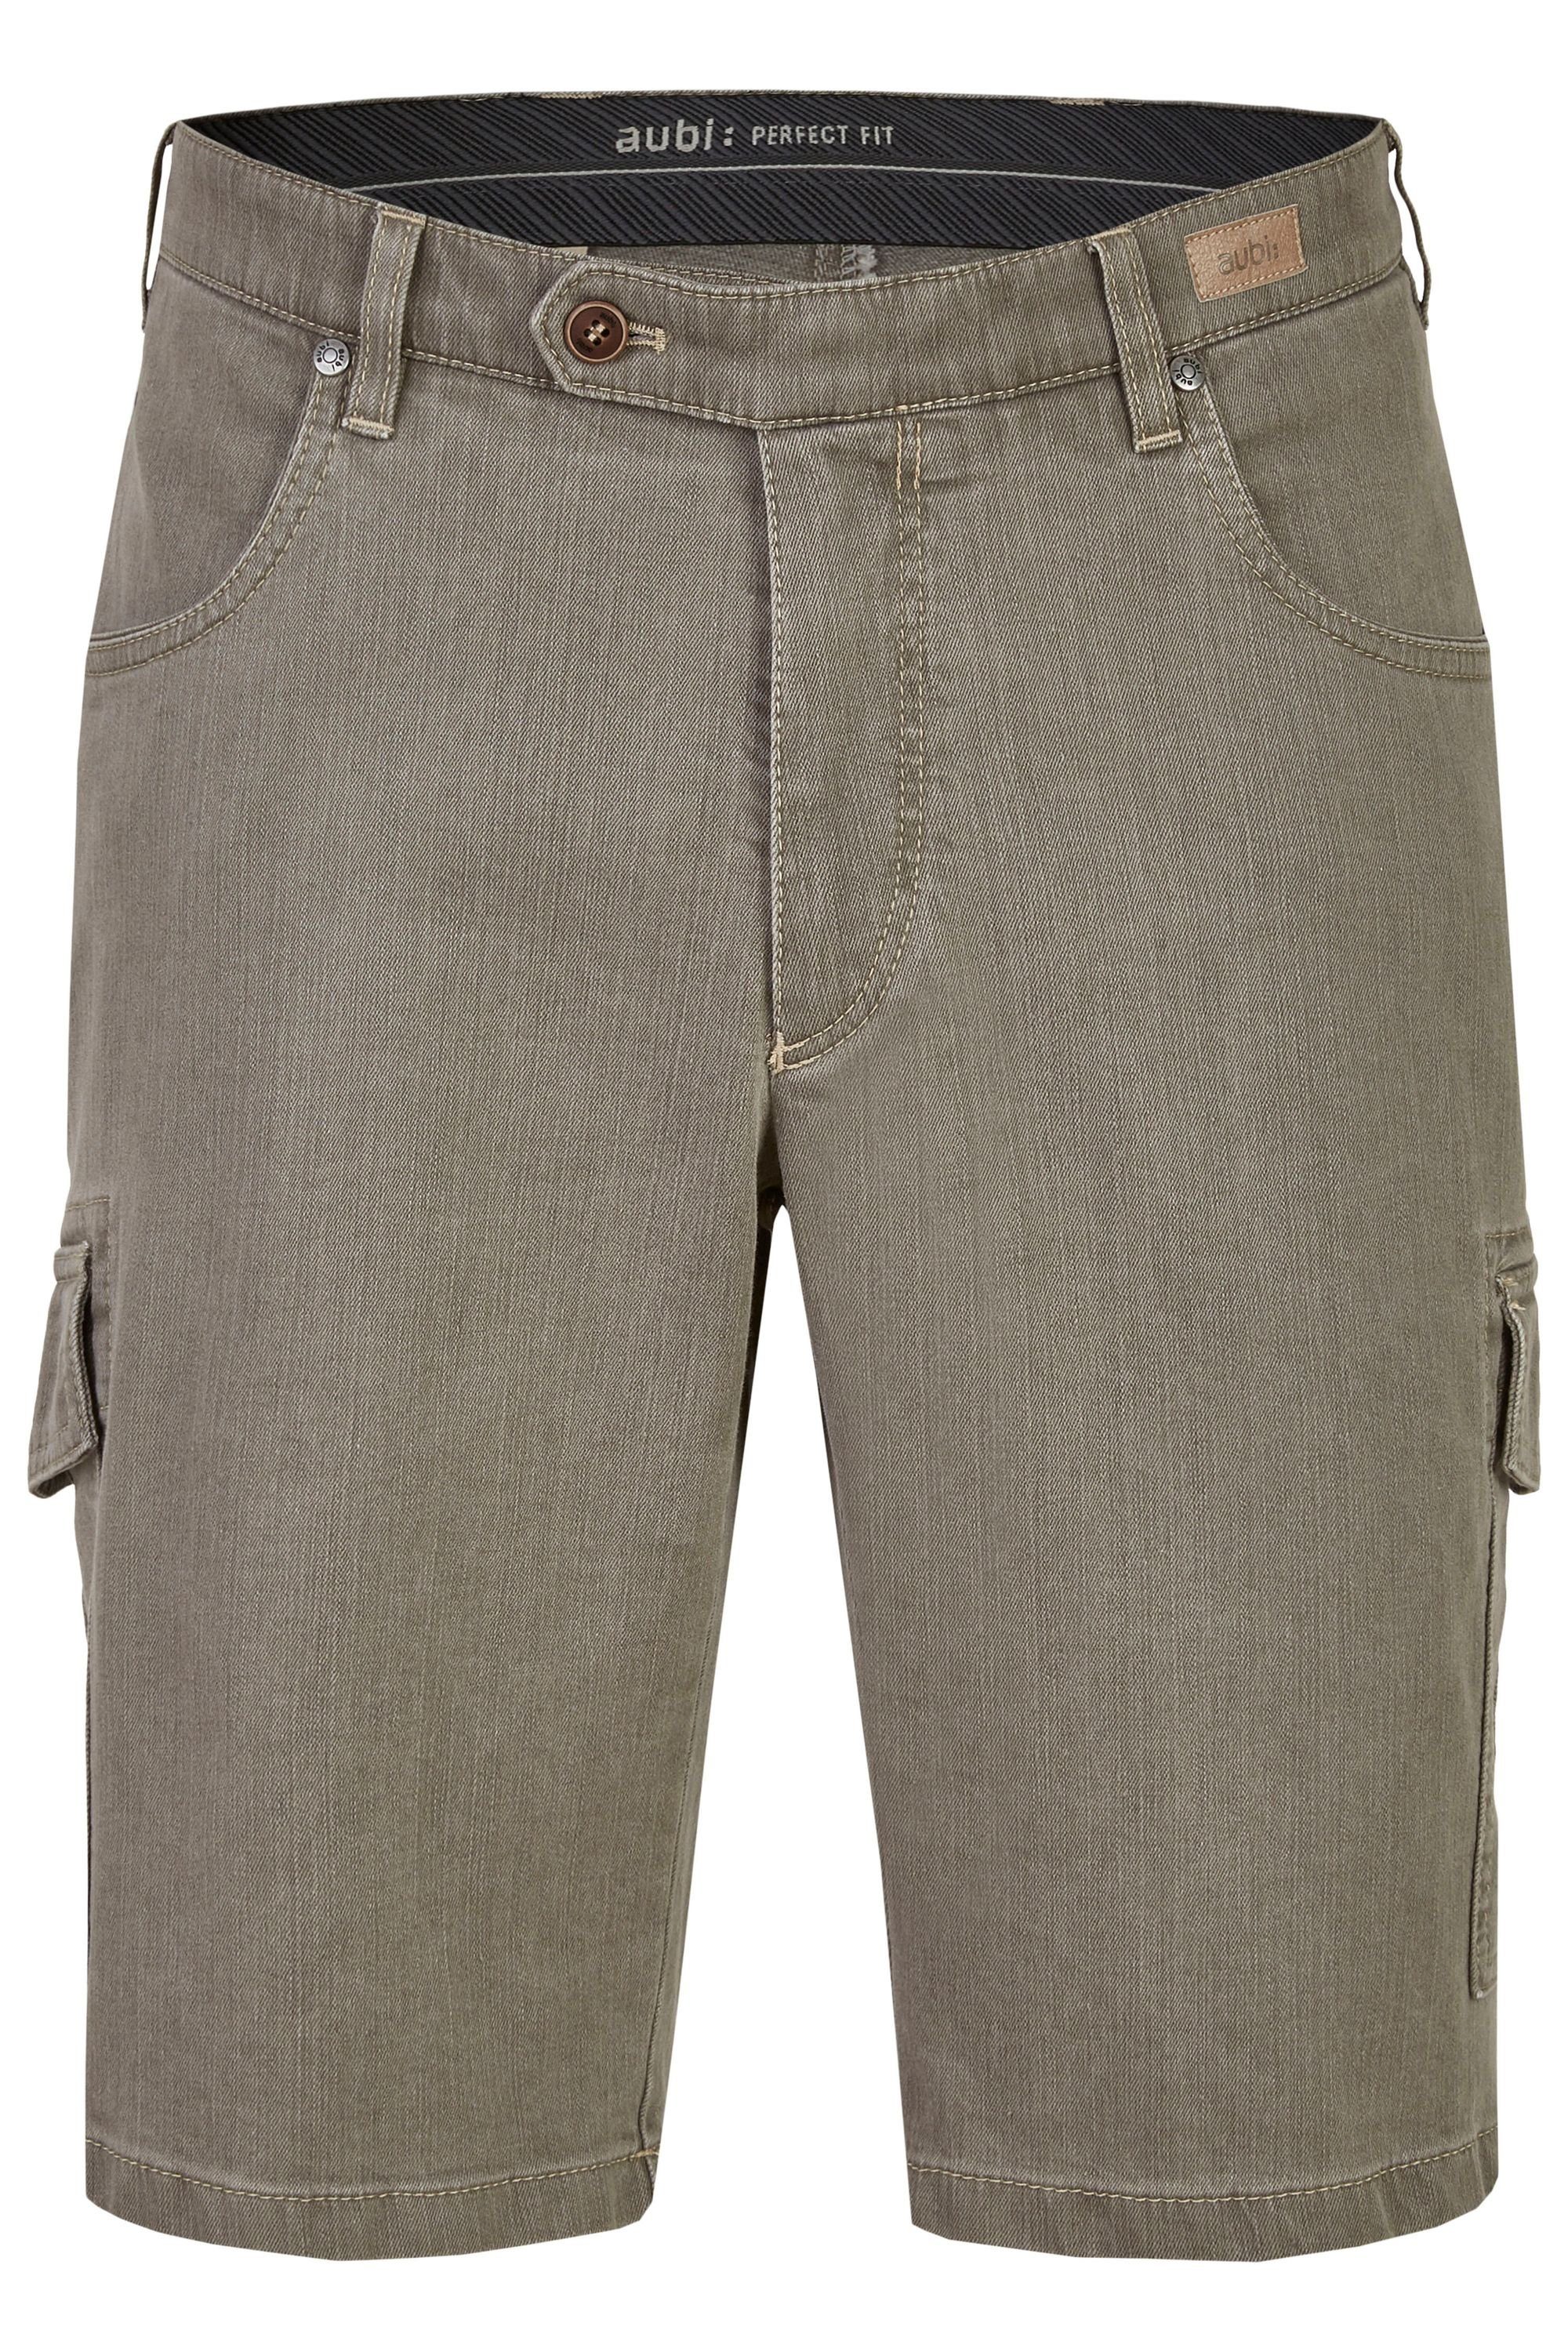 aubi: Bequeme Jeans aubi Jeans Baumwolle Flex aus Perfect High olive Herren Modell Sommer (24) 616 Cargo Fit Shorts Stretch